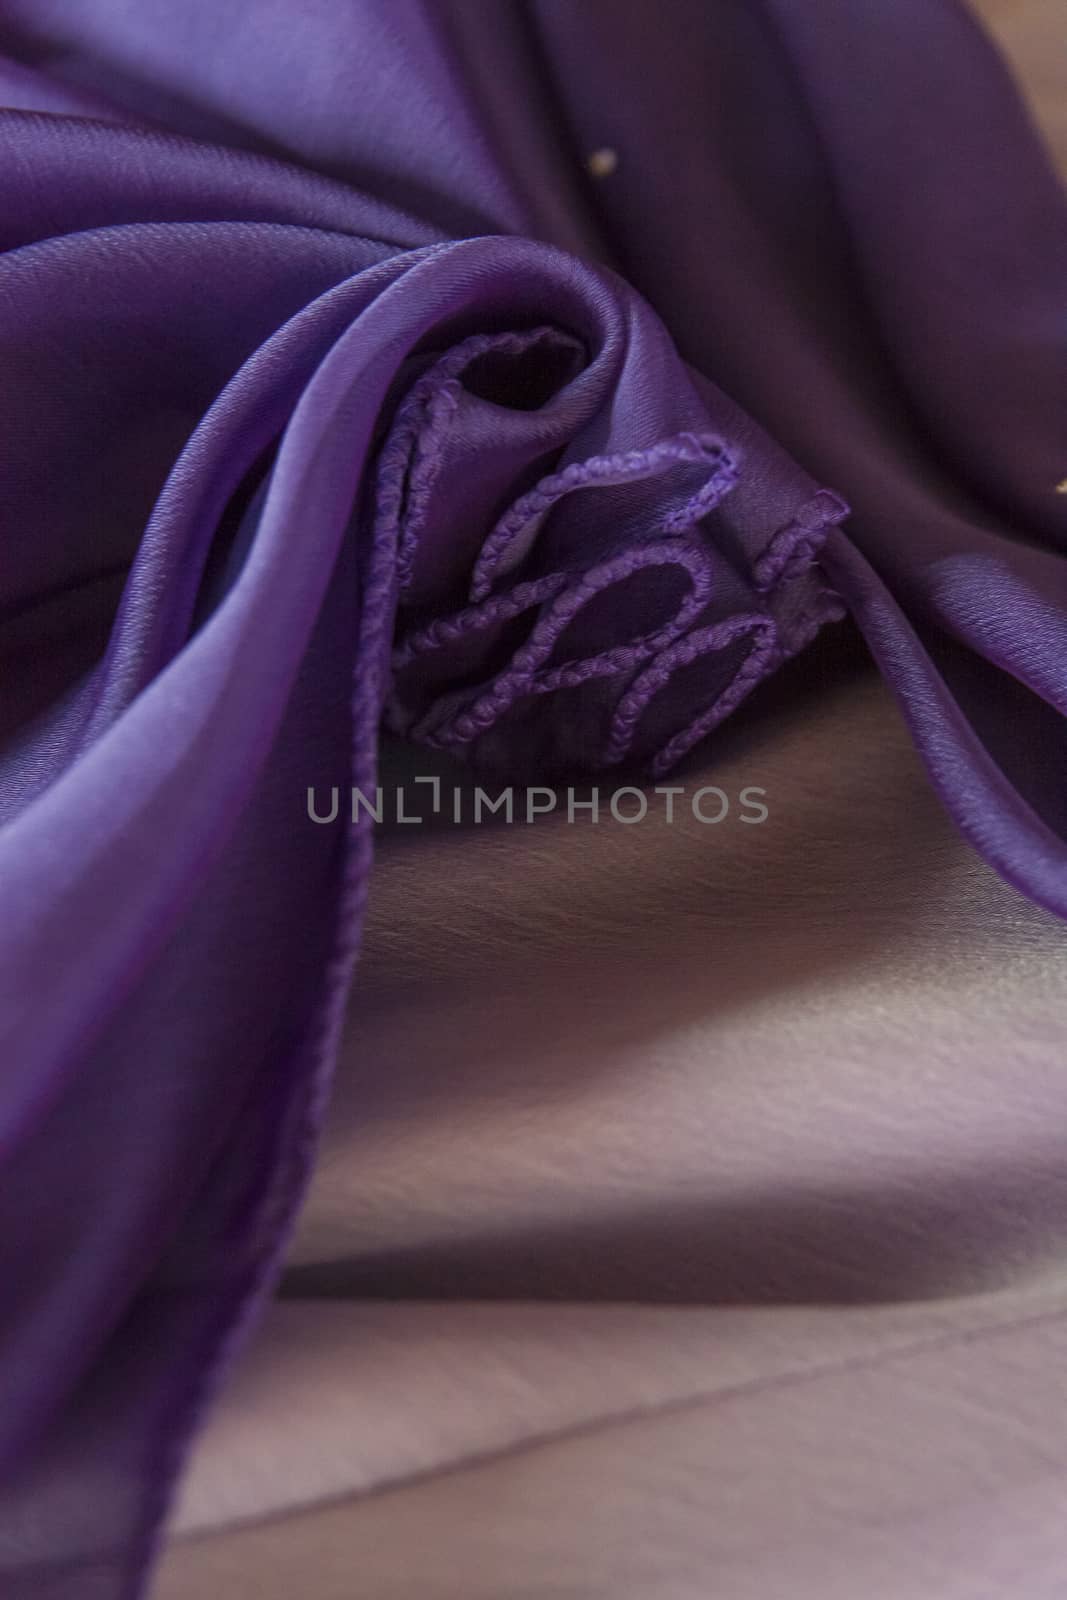 Violet silk by nicobernieri